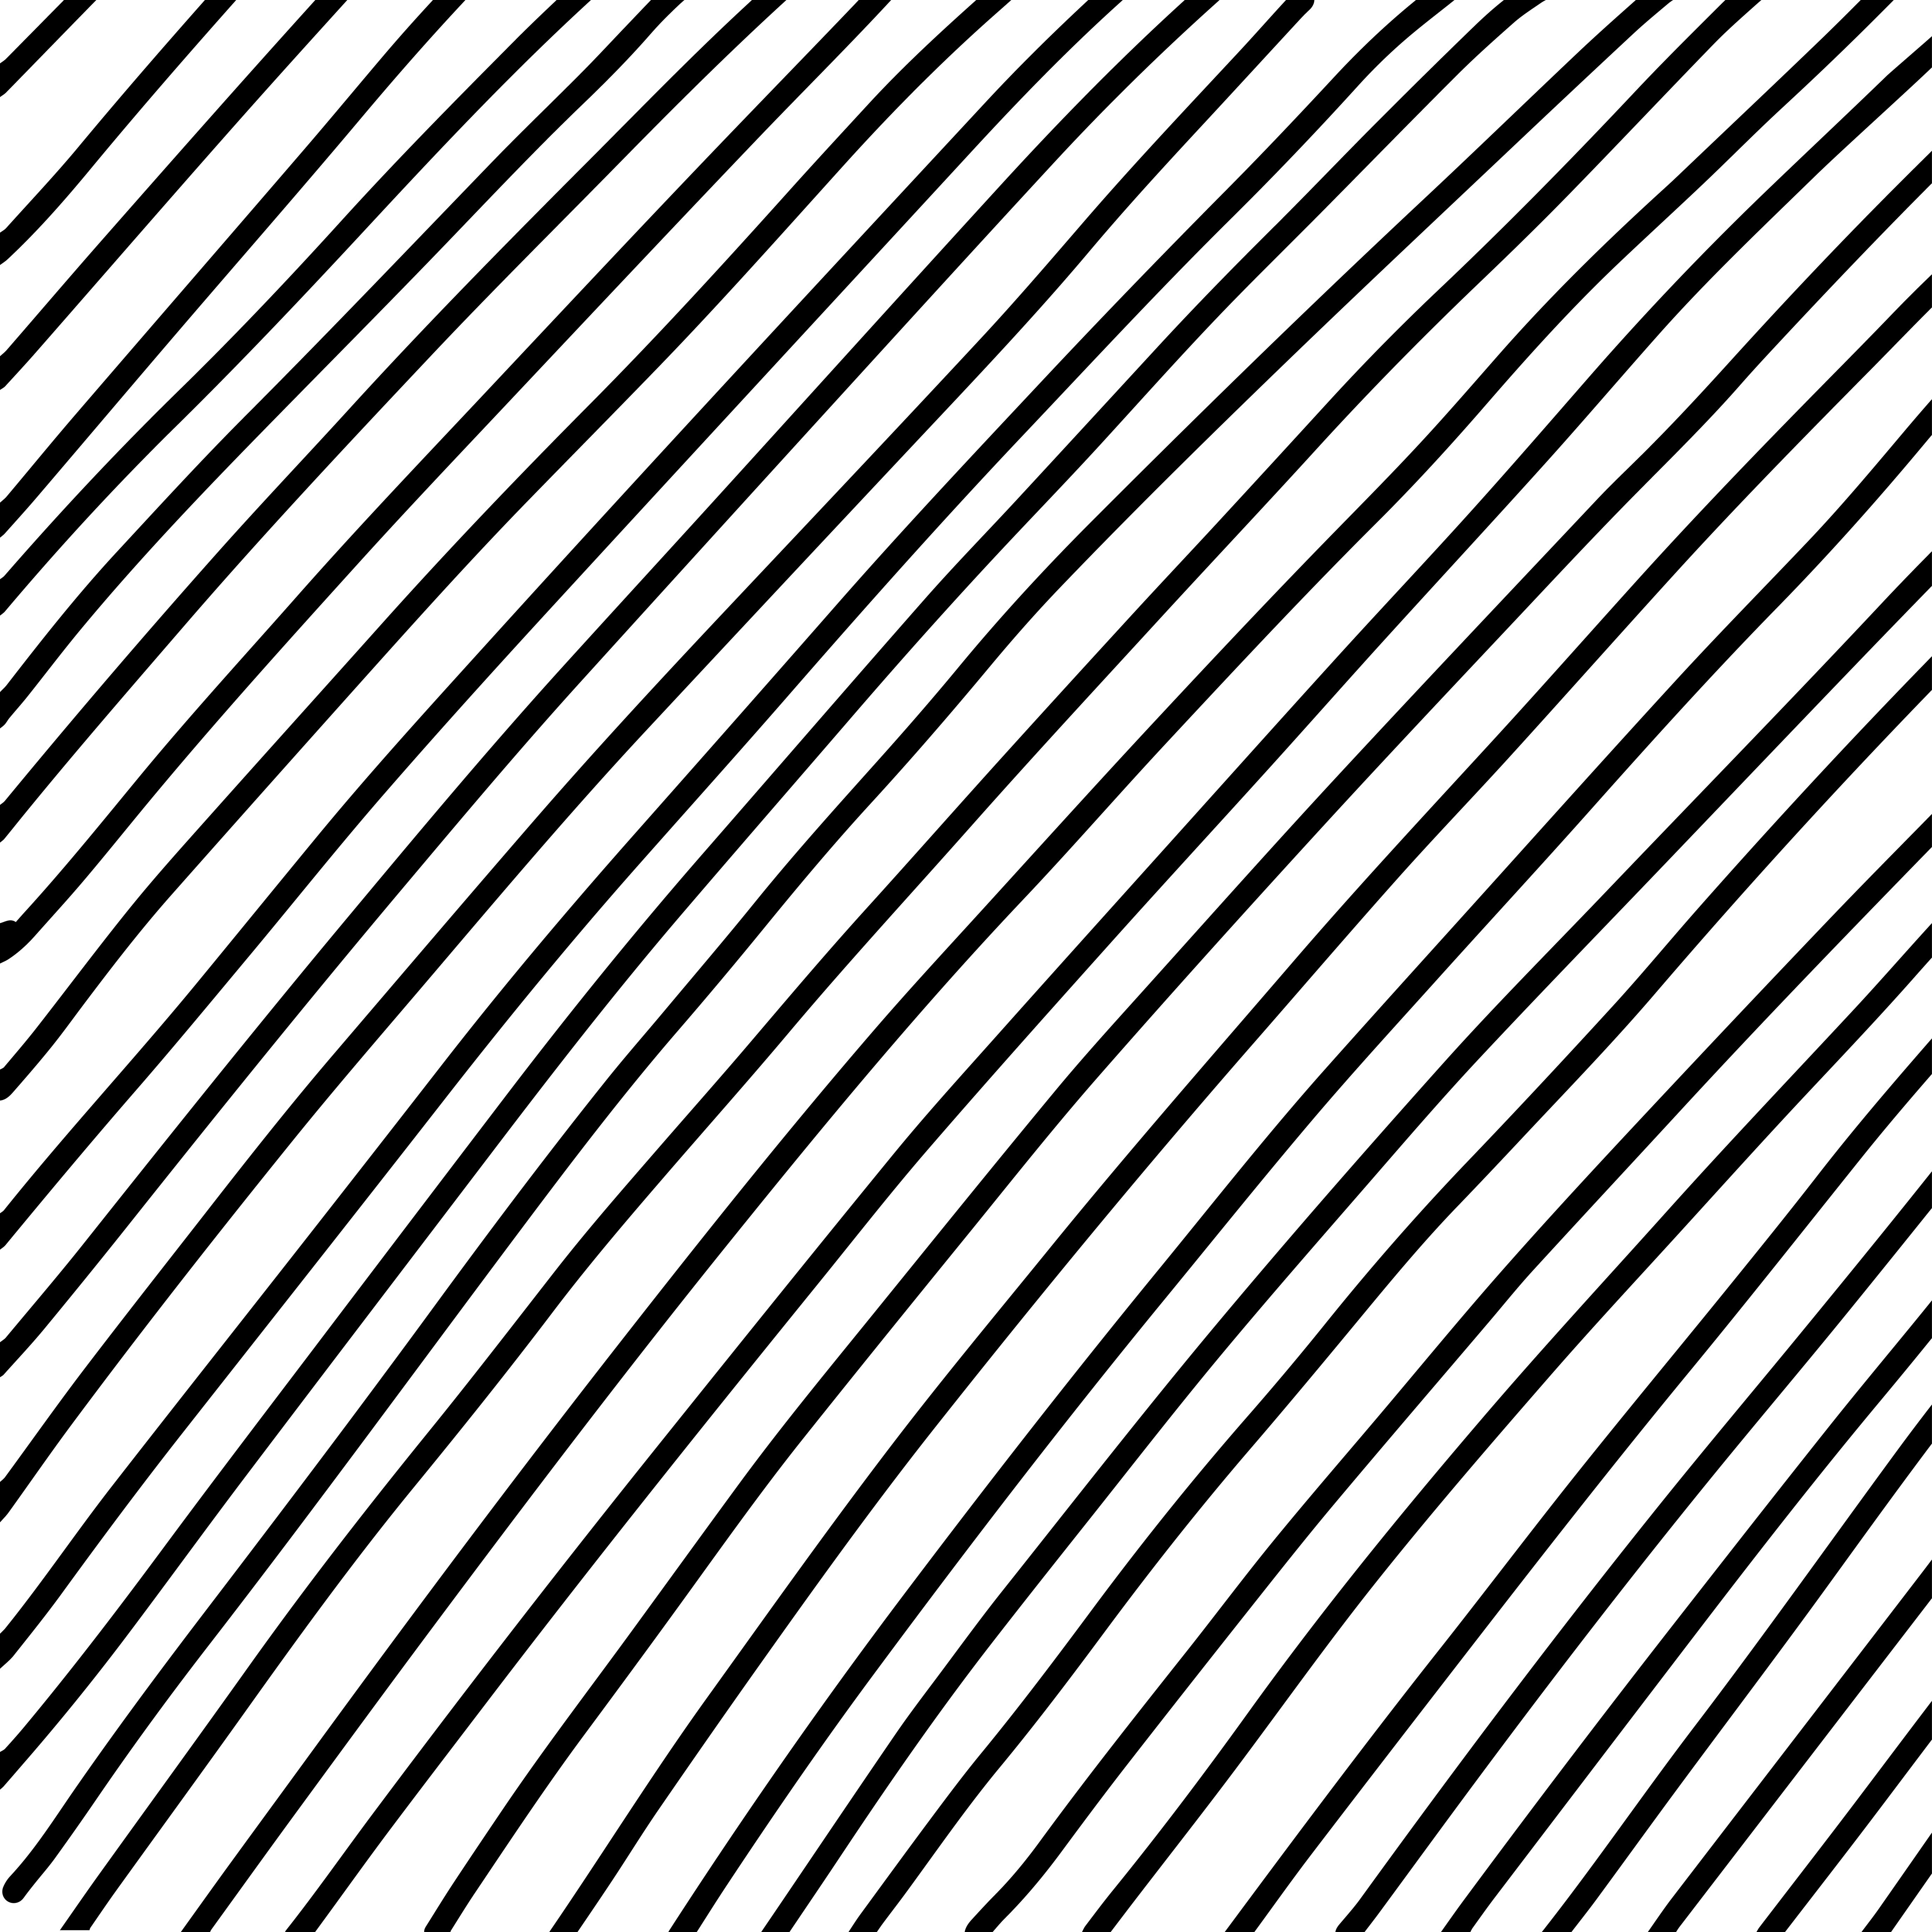 Diagonal lines texture. Free Vectors, Clipart Graphics & Vector Art